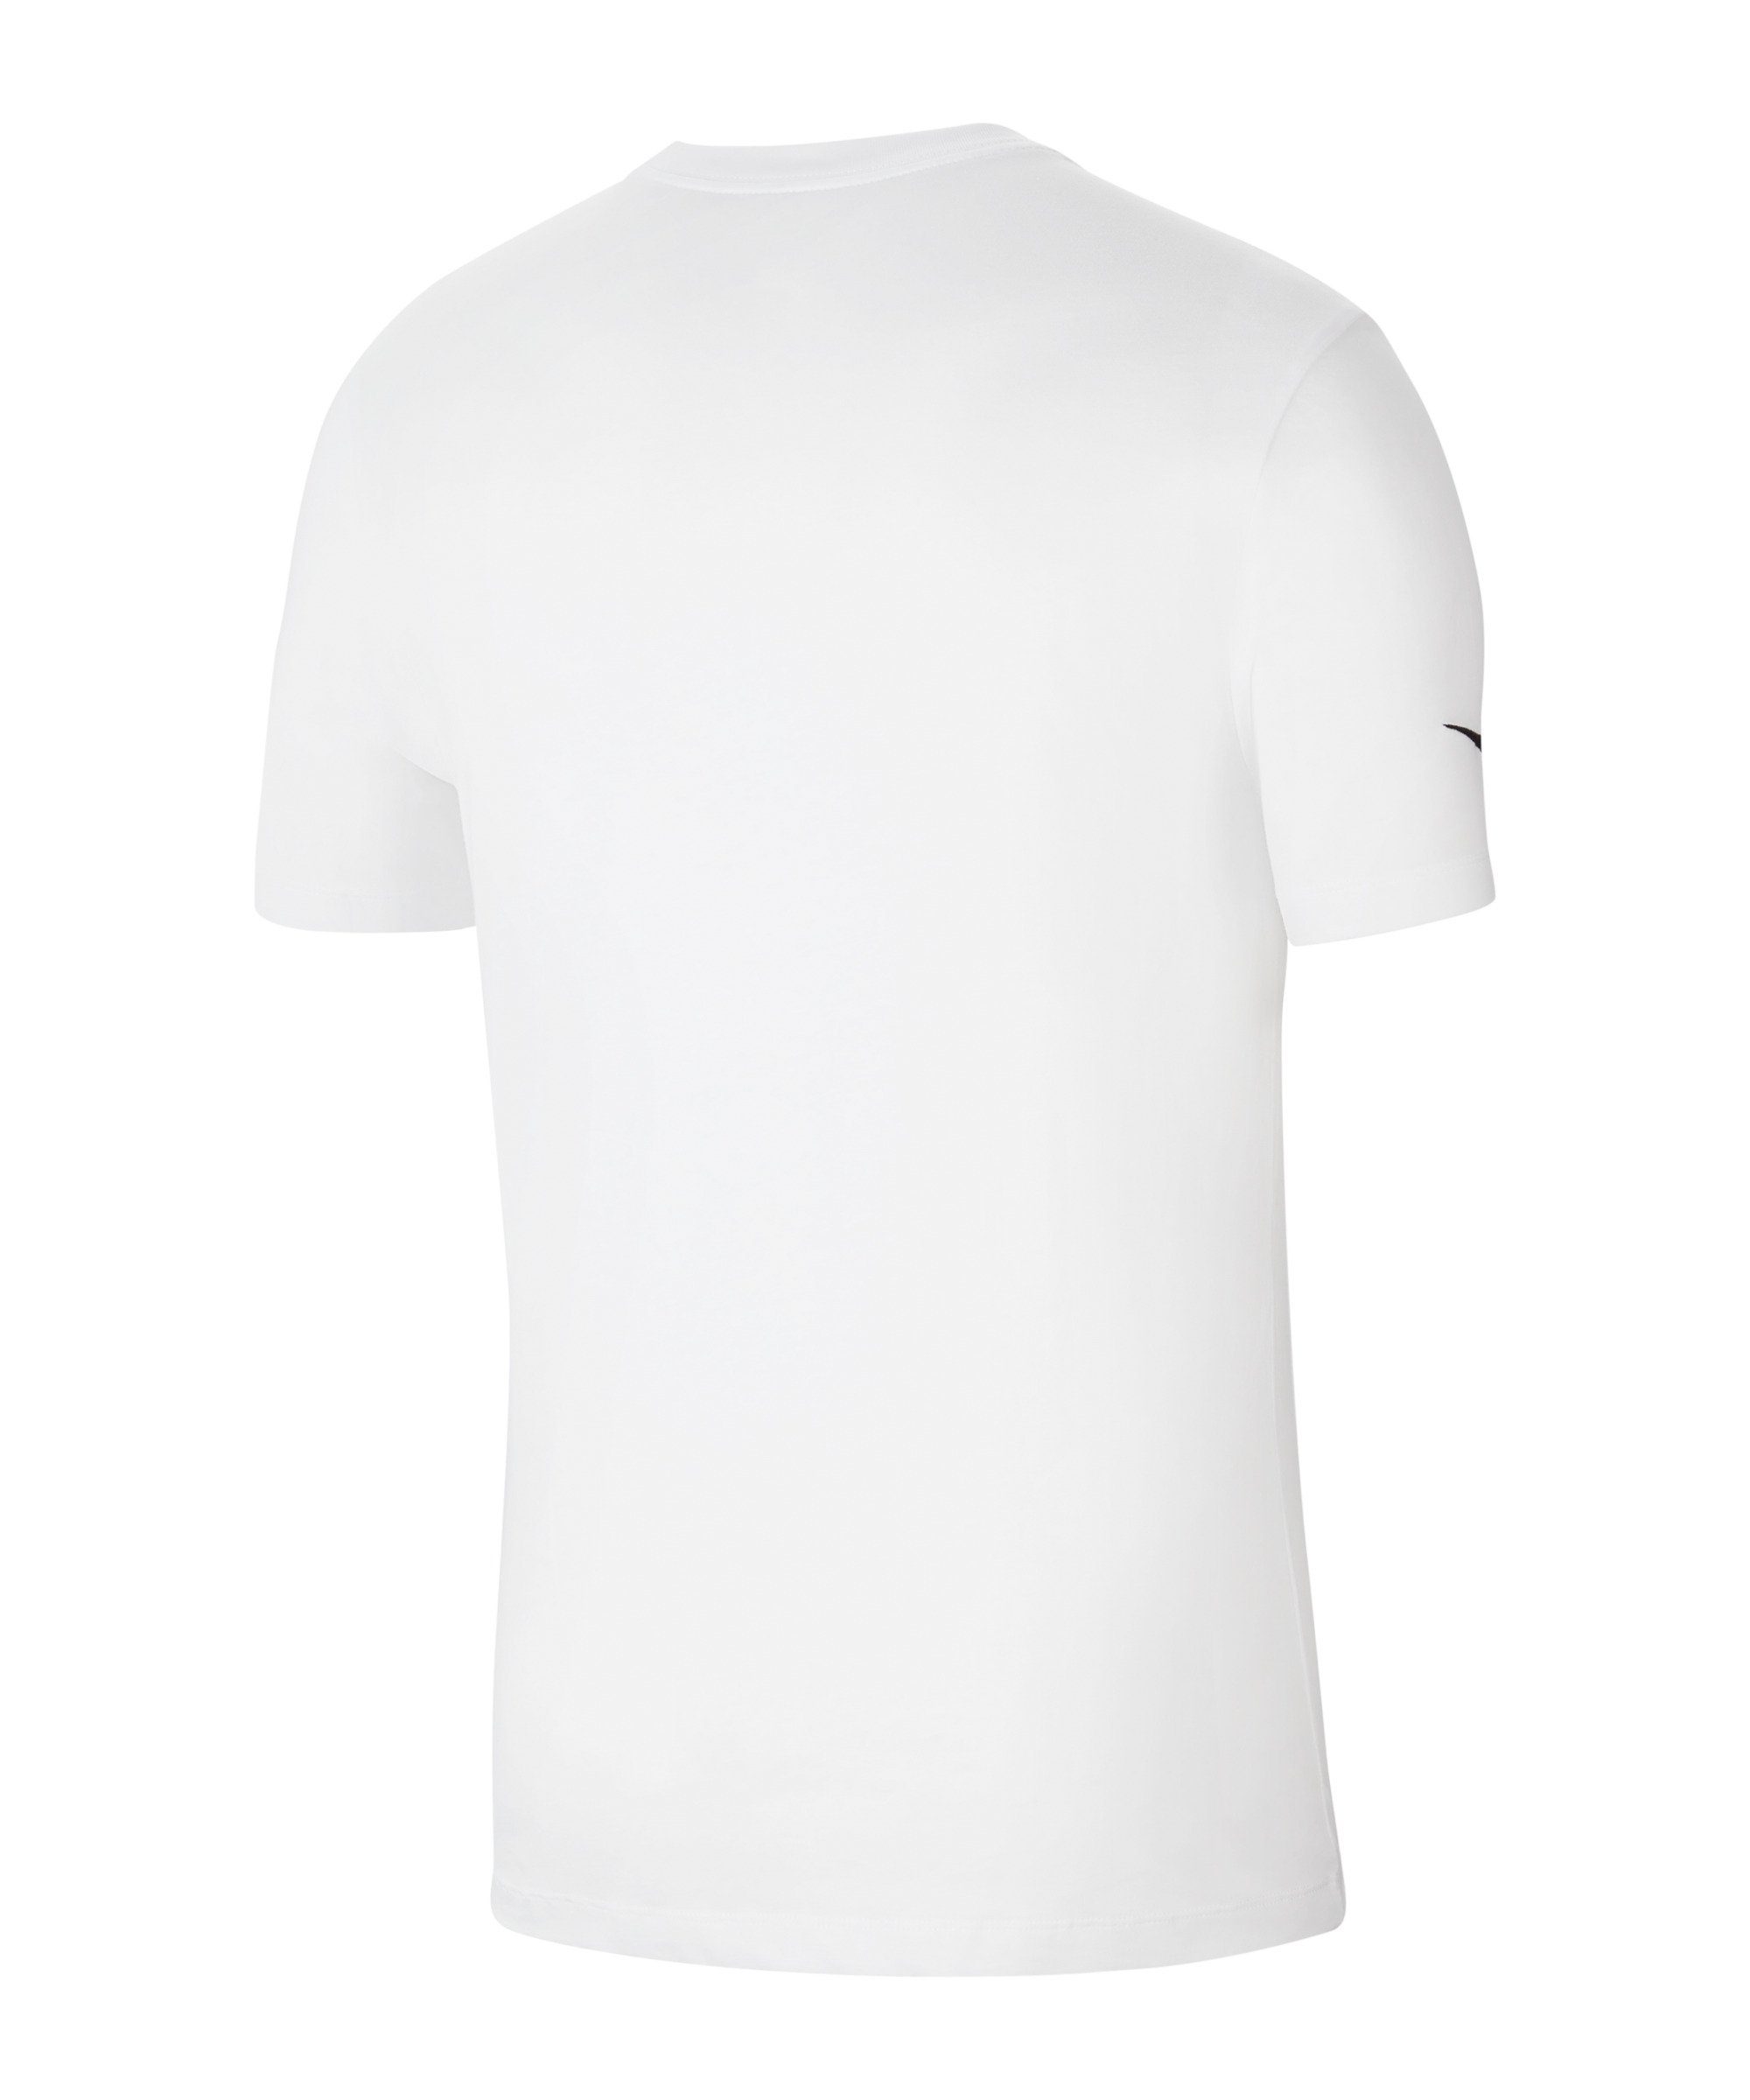 Park T-Shirt default weissschwarz Nike 20 T-Shirt